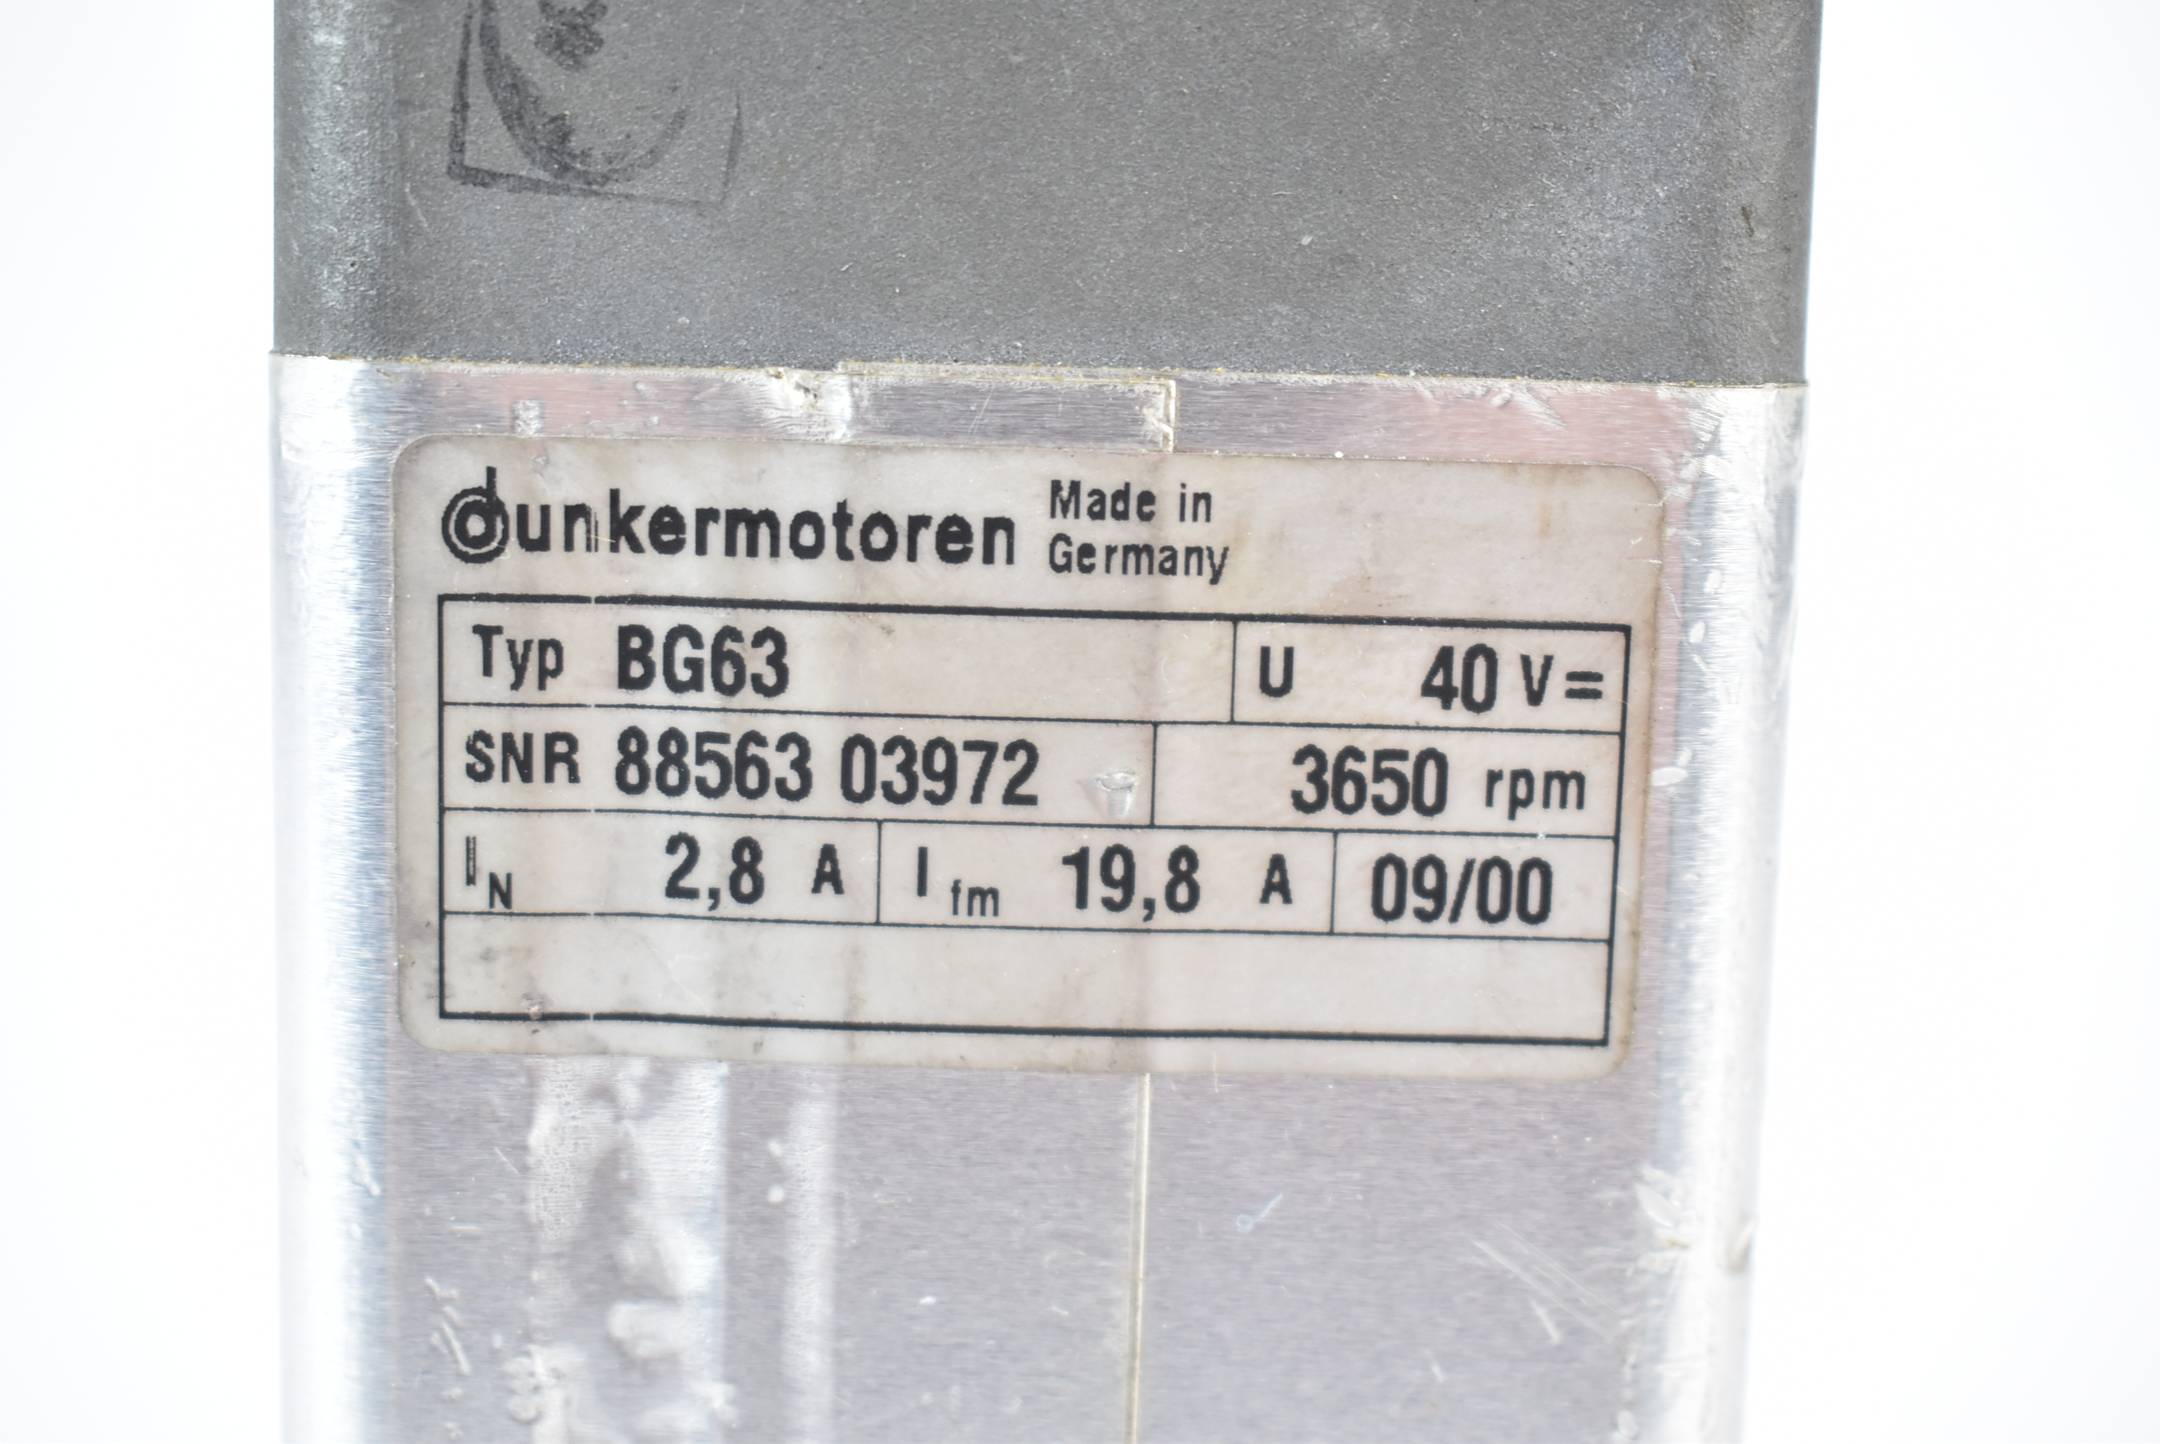 Dunkermotoren Motor 40V 3650rpm 2,8A 19,8A BG63 inkl. Drehgeber RE56-2-1000